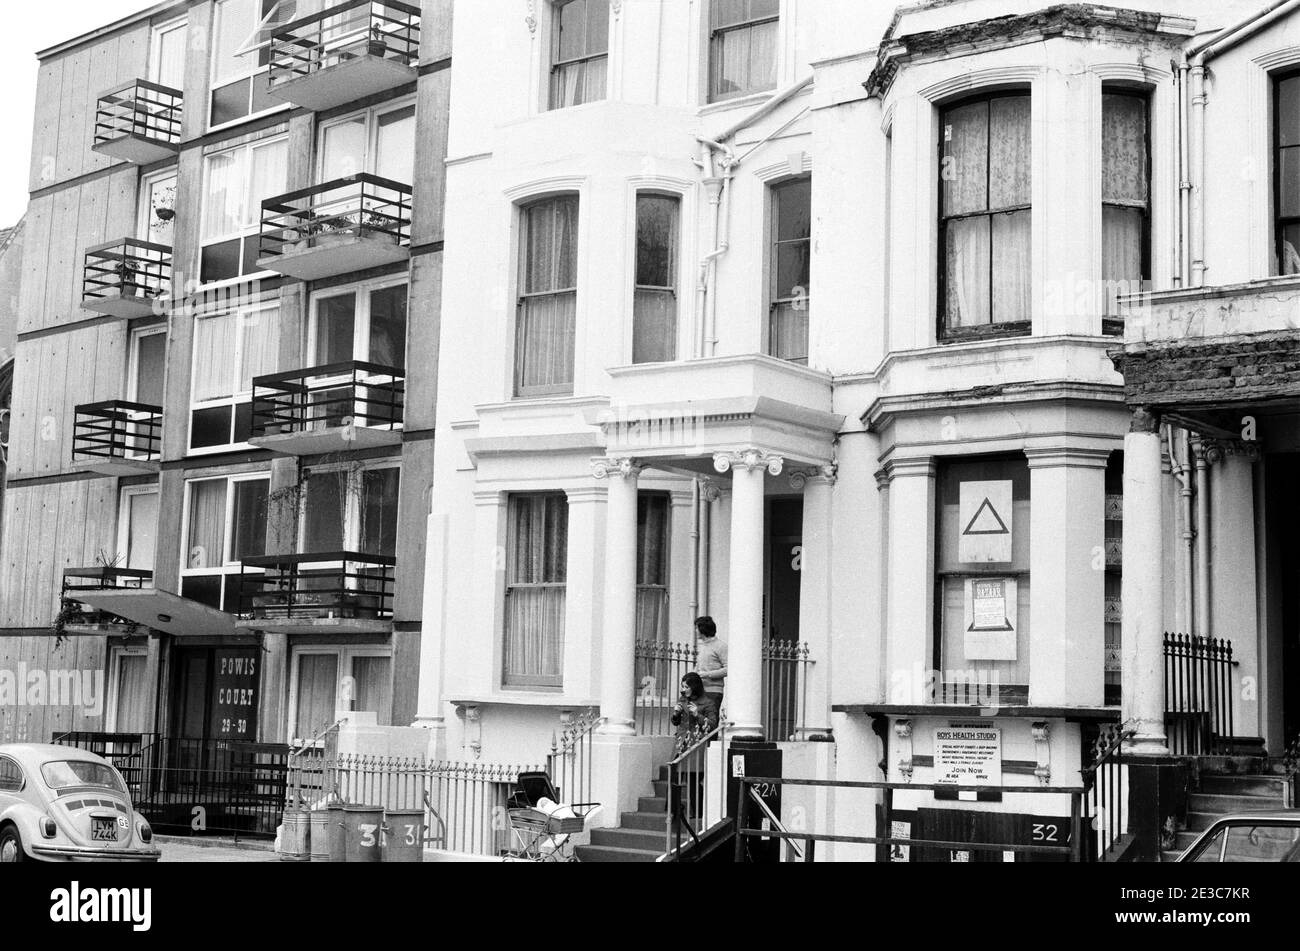 UK, West London, Notting Hill, 1973. Rundown e faticosamente grandi case a quattro piani stanno iniziando ad essere restaurate e ridecorate. Appartamenti moderni a Powis Court sulla sinistra. No.32 Powis Square - segno a 'Roys Health Studio'. Poster nella finestra per un bazar stella-mornig. Foto Stock